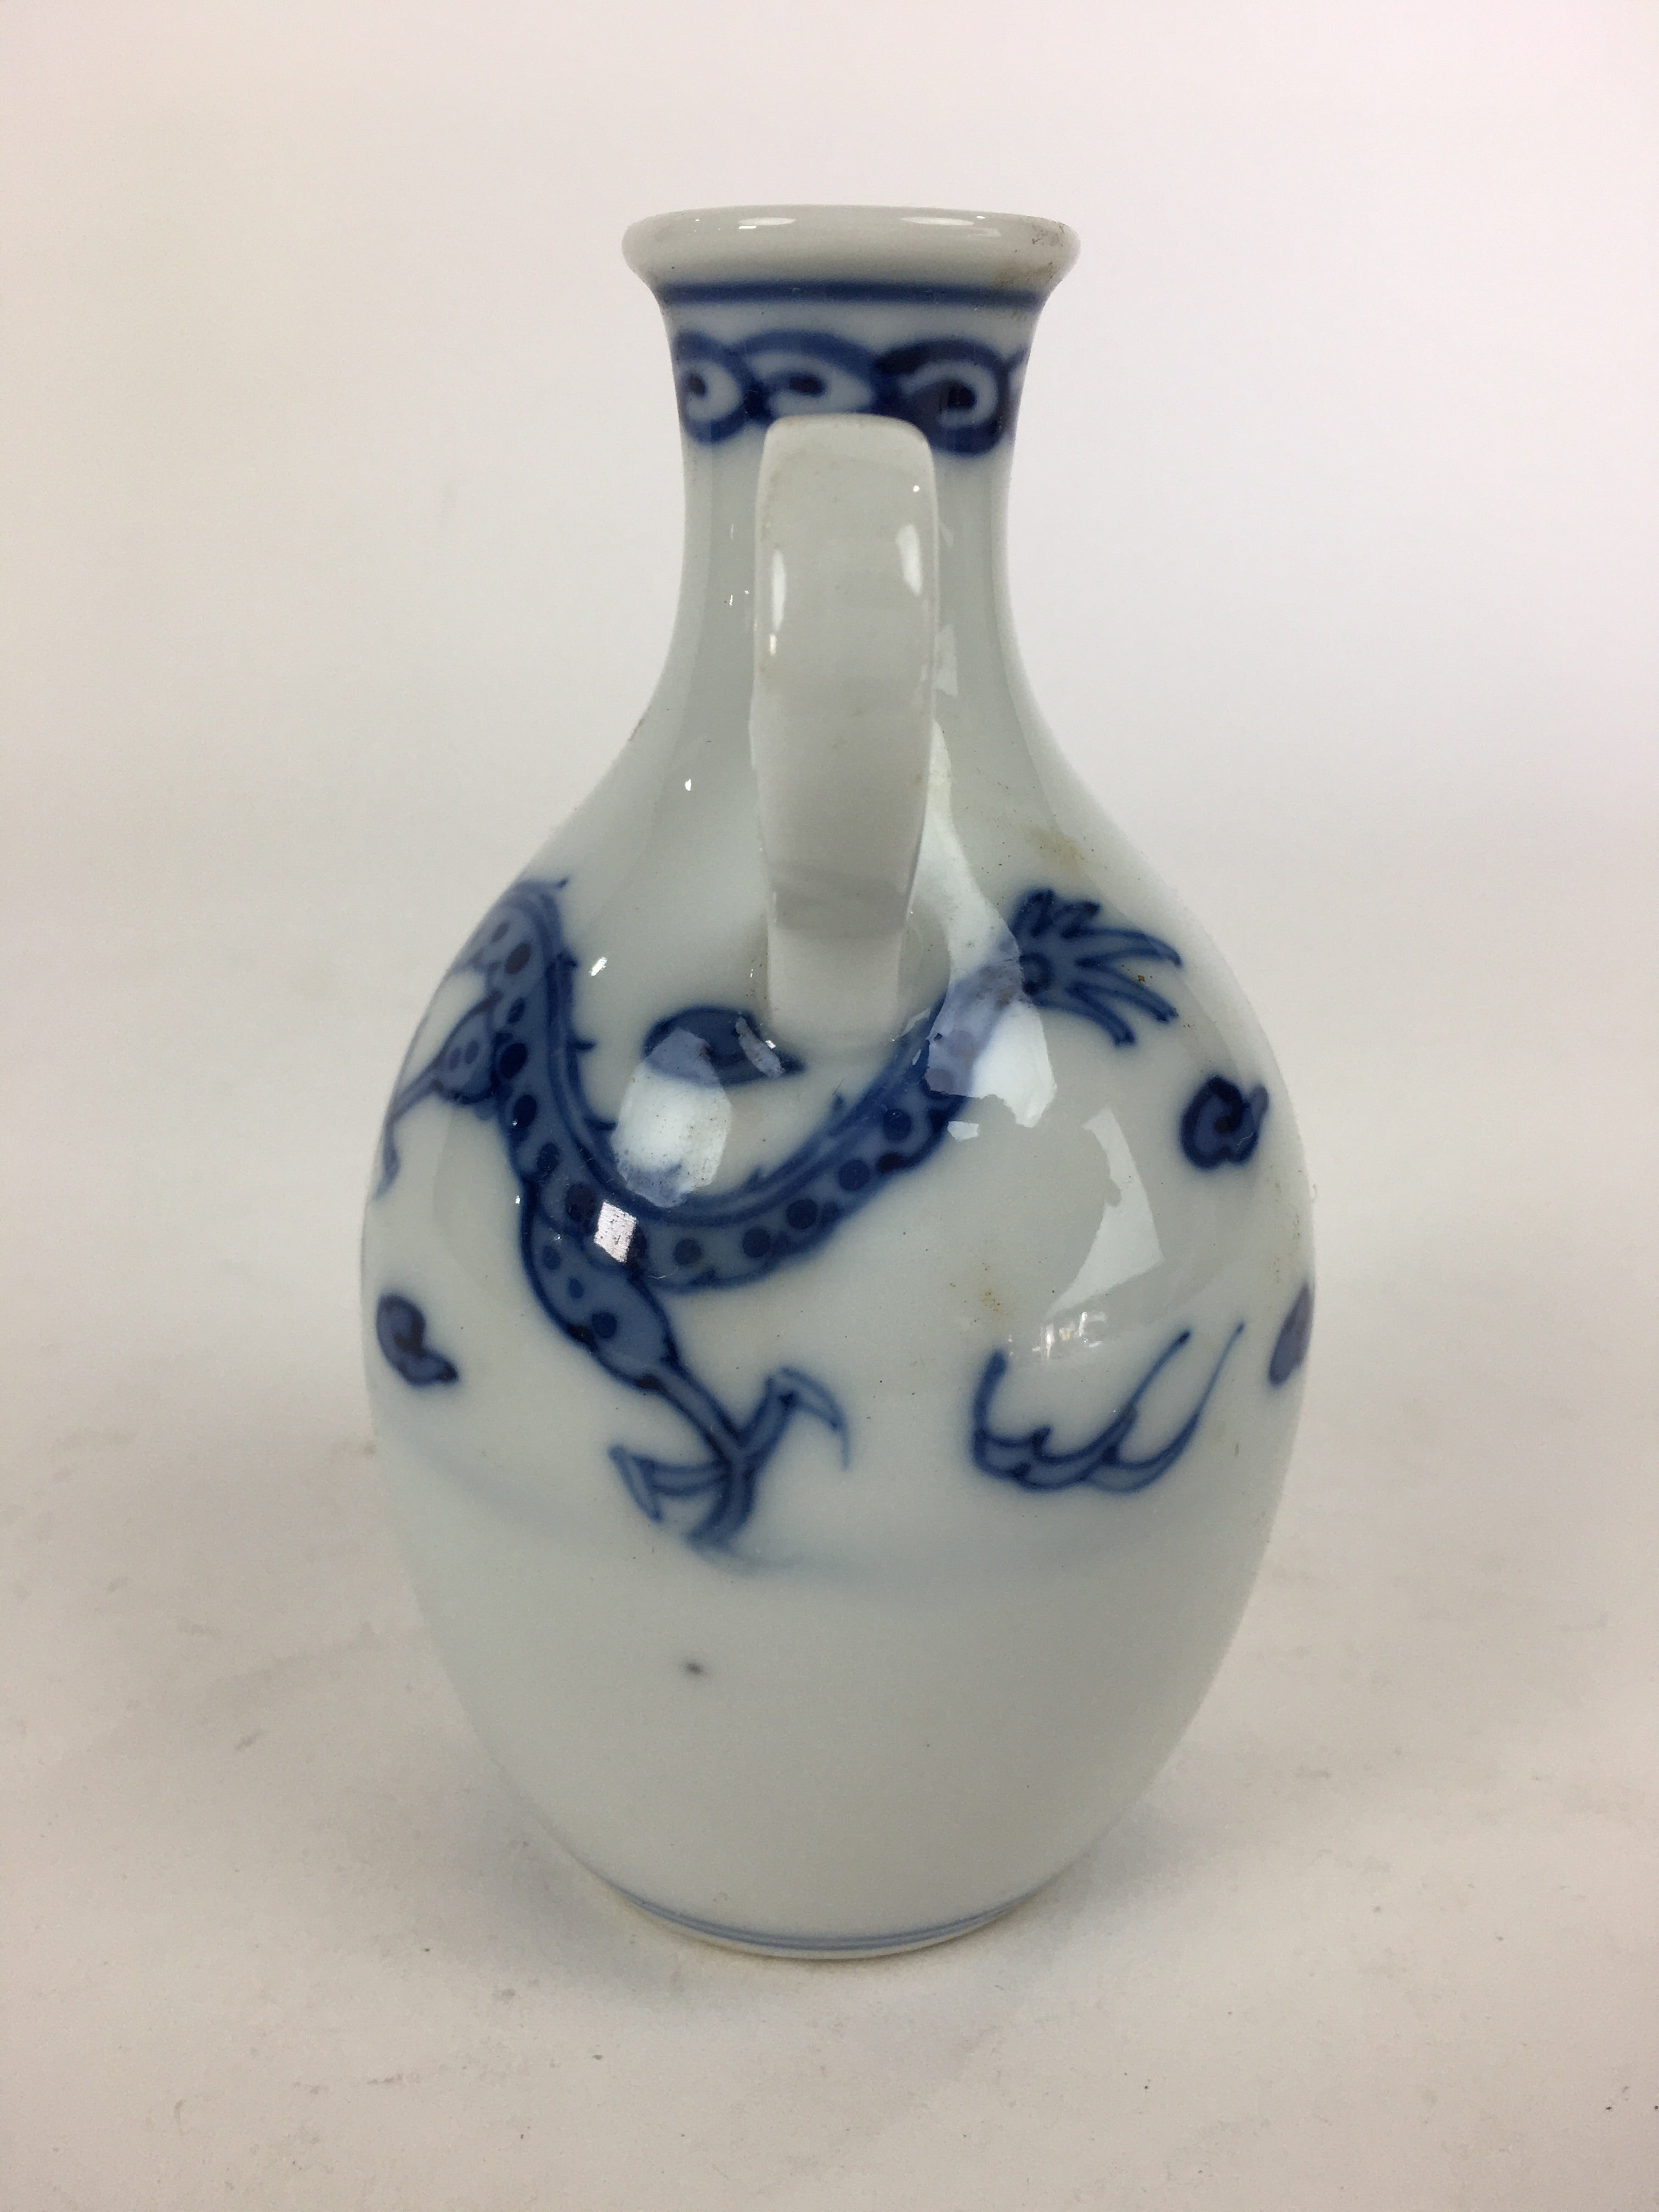 https://chidorivintage.com/cdn/shop/products/Japanese-Porcelain-Sake-Bottle-Vtg-Sometsuke-Blue-Dragon-White-Tokkuri-TS323-5.jpg?v=1644779830